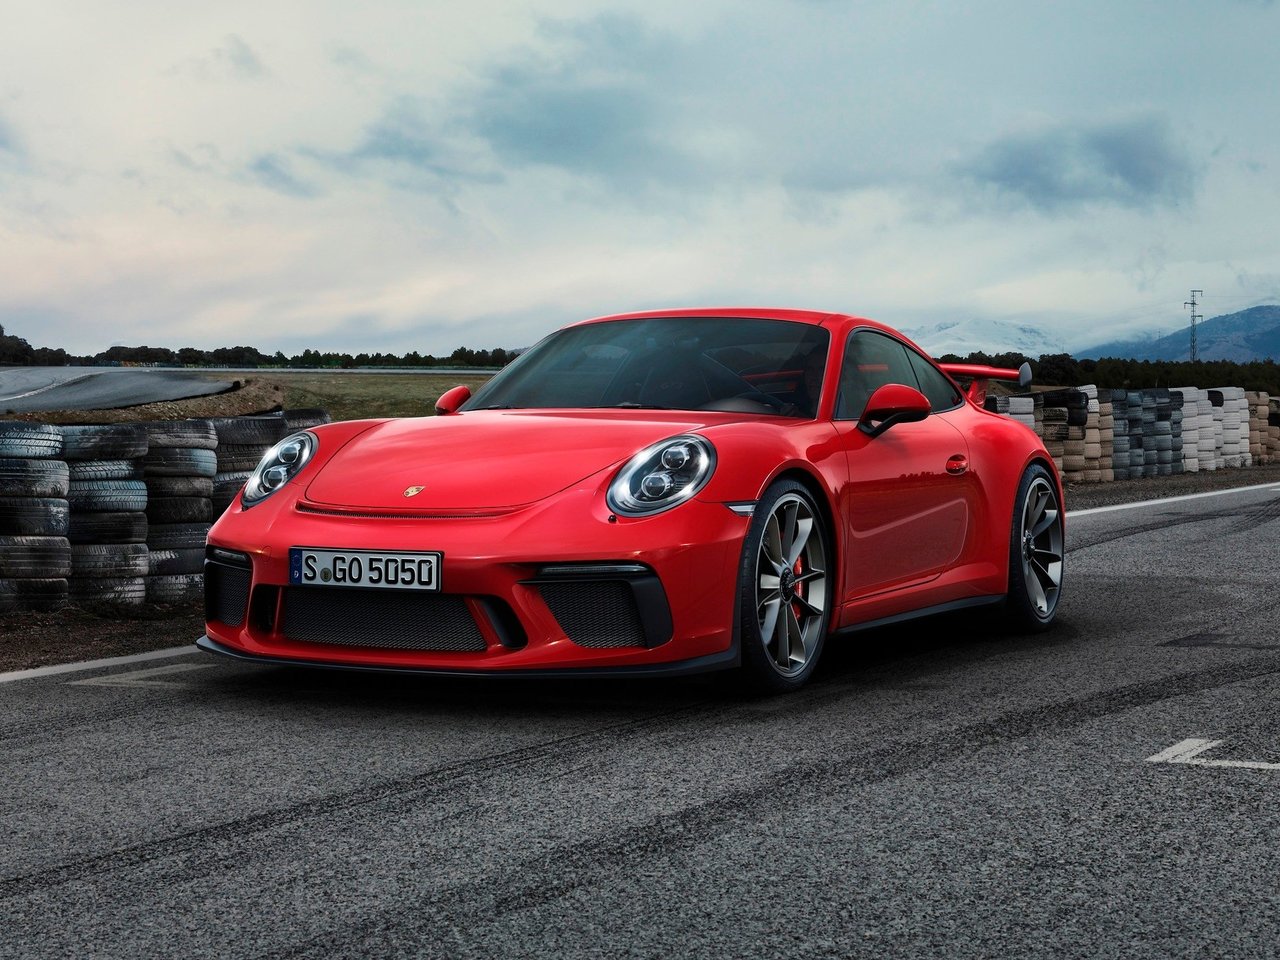 Снижаем расход Porsche 911 GT3 на топливо, устанавливаем ГБО